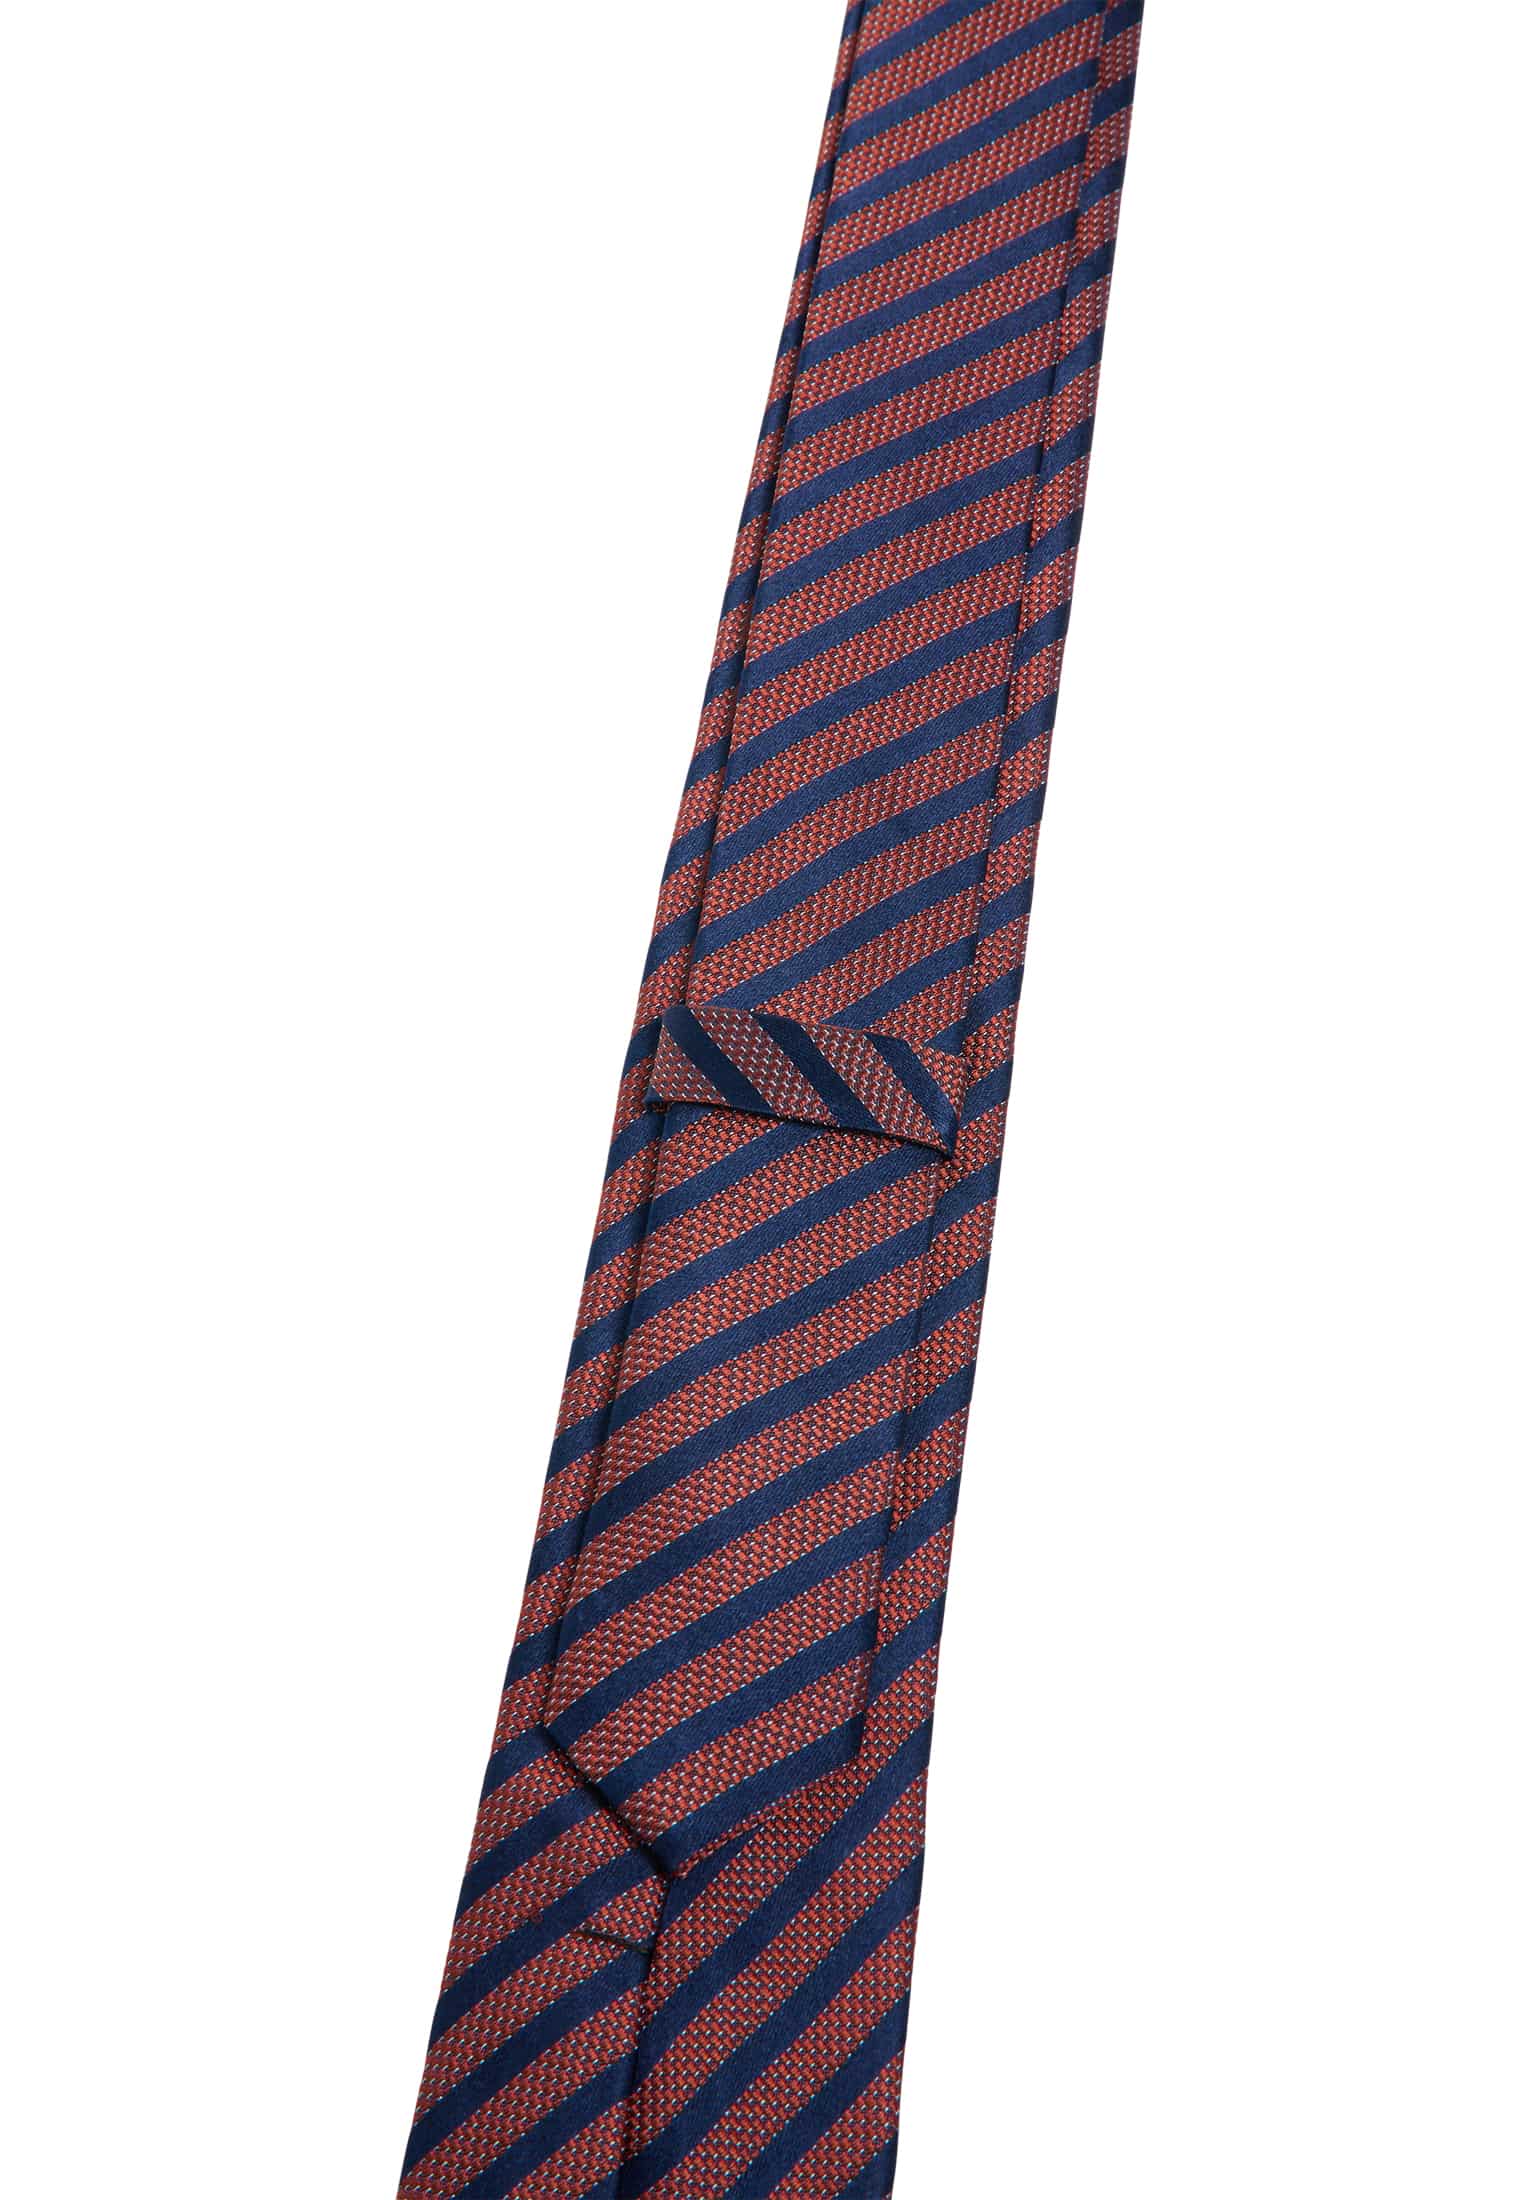 Krawatte in rot gestreift | 142 | 1AC01894-05-01-142 rot 